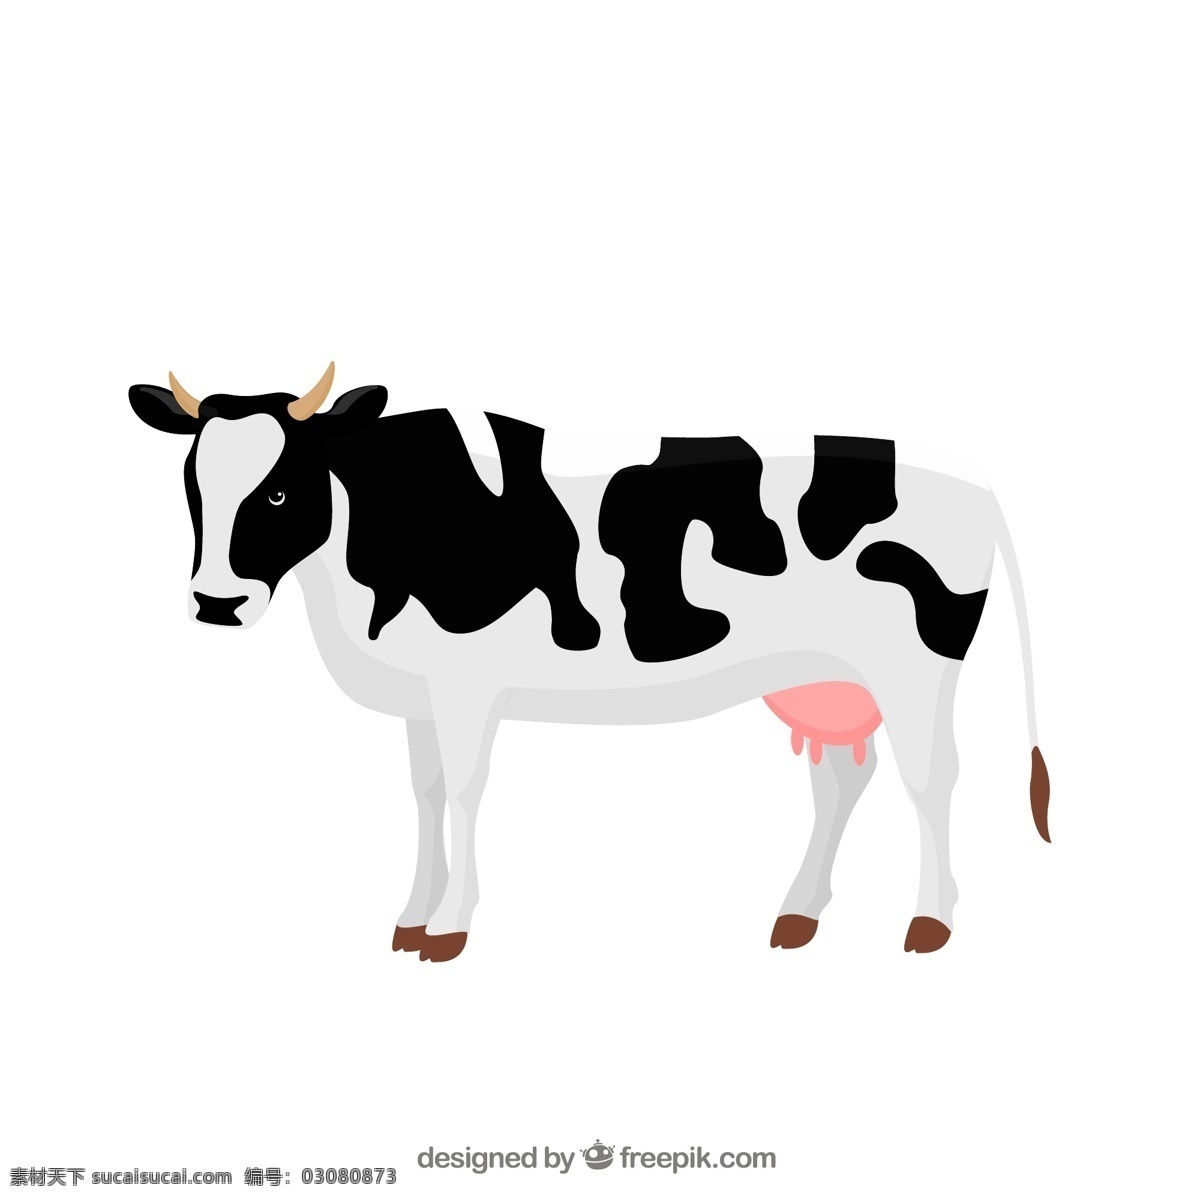 黑白 花纹 奶牛 矢量 素材图片 背景 插画 动物 海报 画册 家禽家畜 家畜 牛 白色